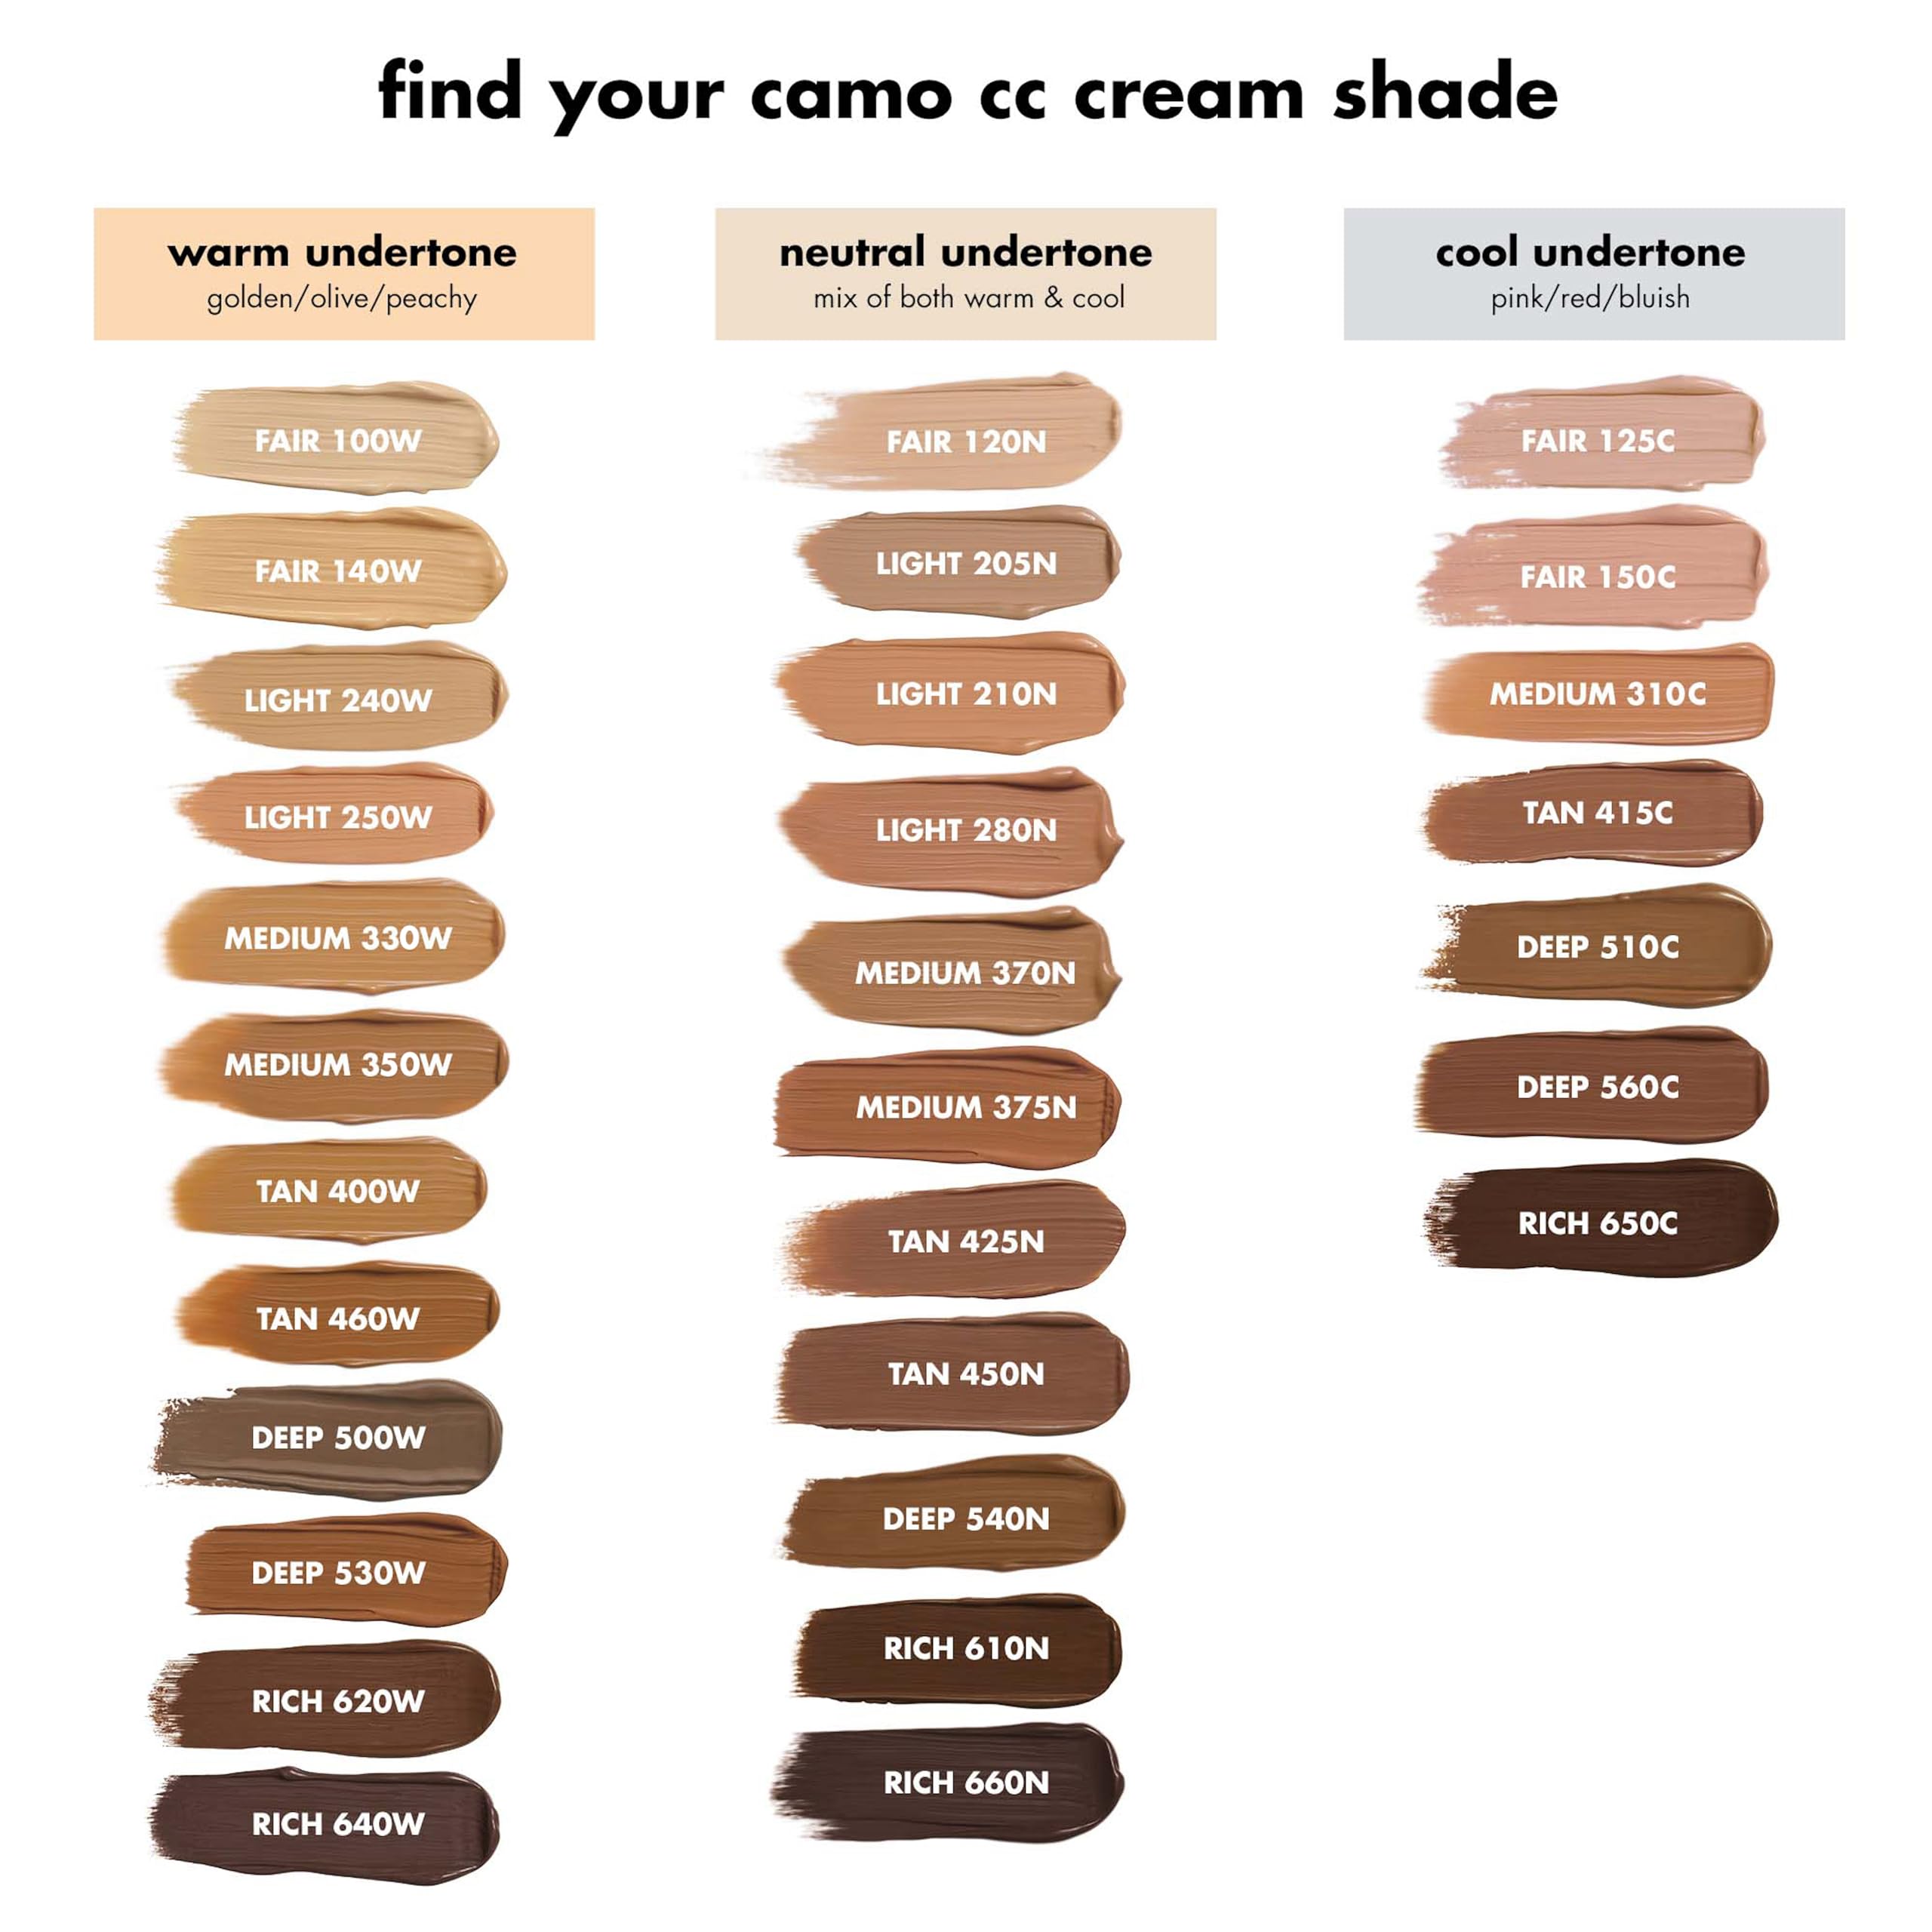 e.l.f. Camo CC Cream, Color Correcting Medium-To-Full Coverage Foundation with SPF 30, Tan 400 W, 1.05 Oz (30g)